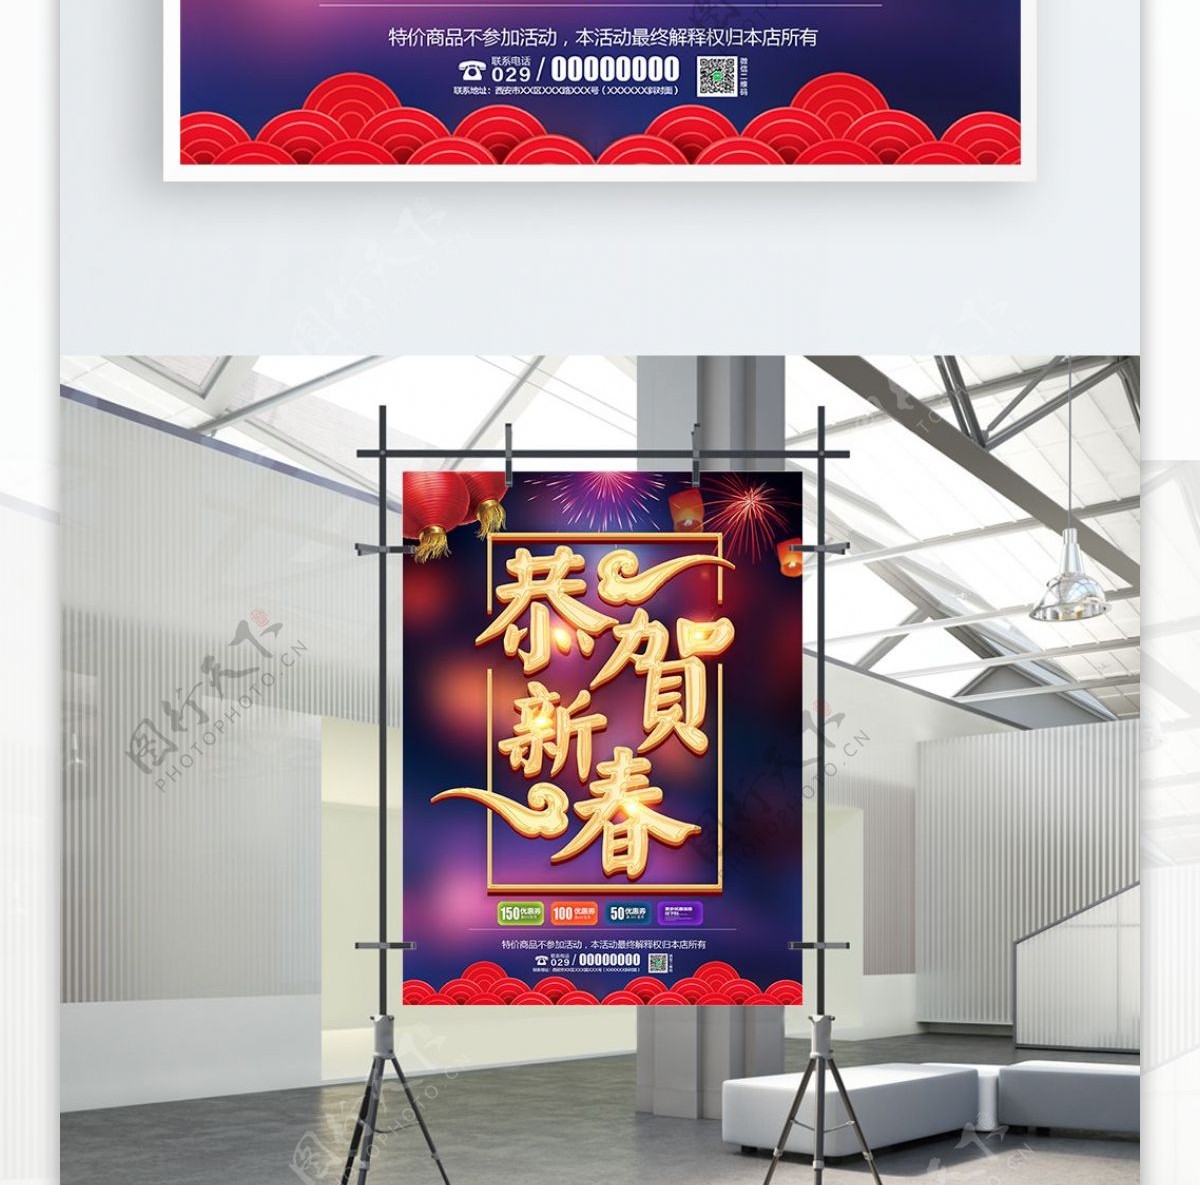 酷炫大气2018恭贺新春促销宣传海报